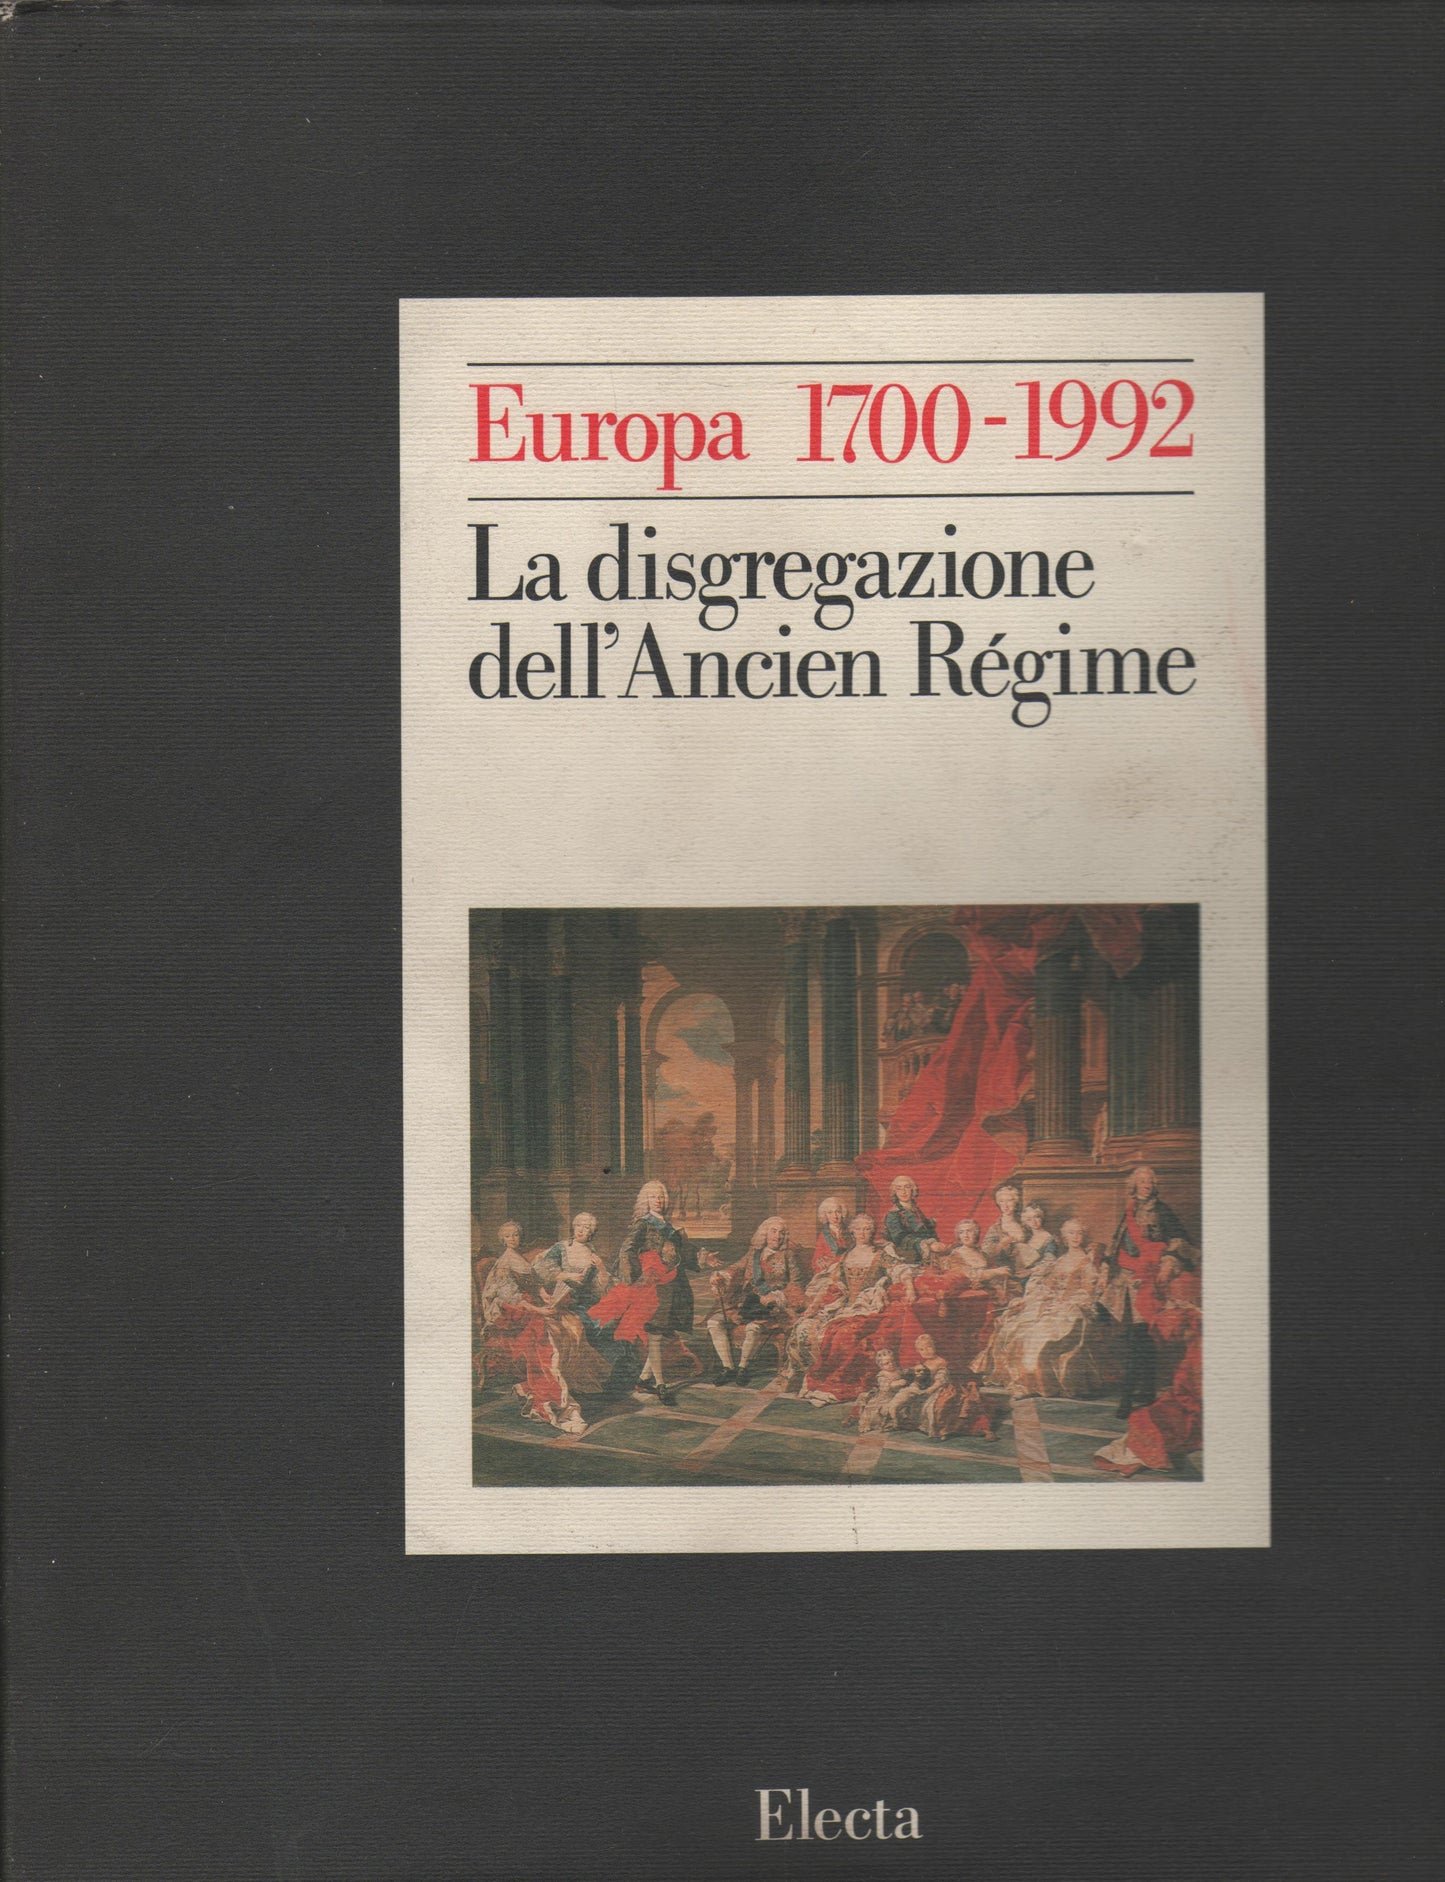 La disgregazione dell'Ancien Régime : Europa 1700-1992: Storia di un'identità